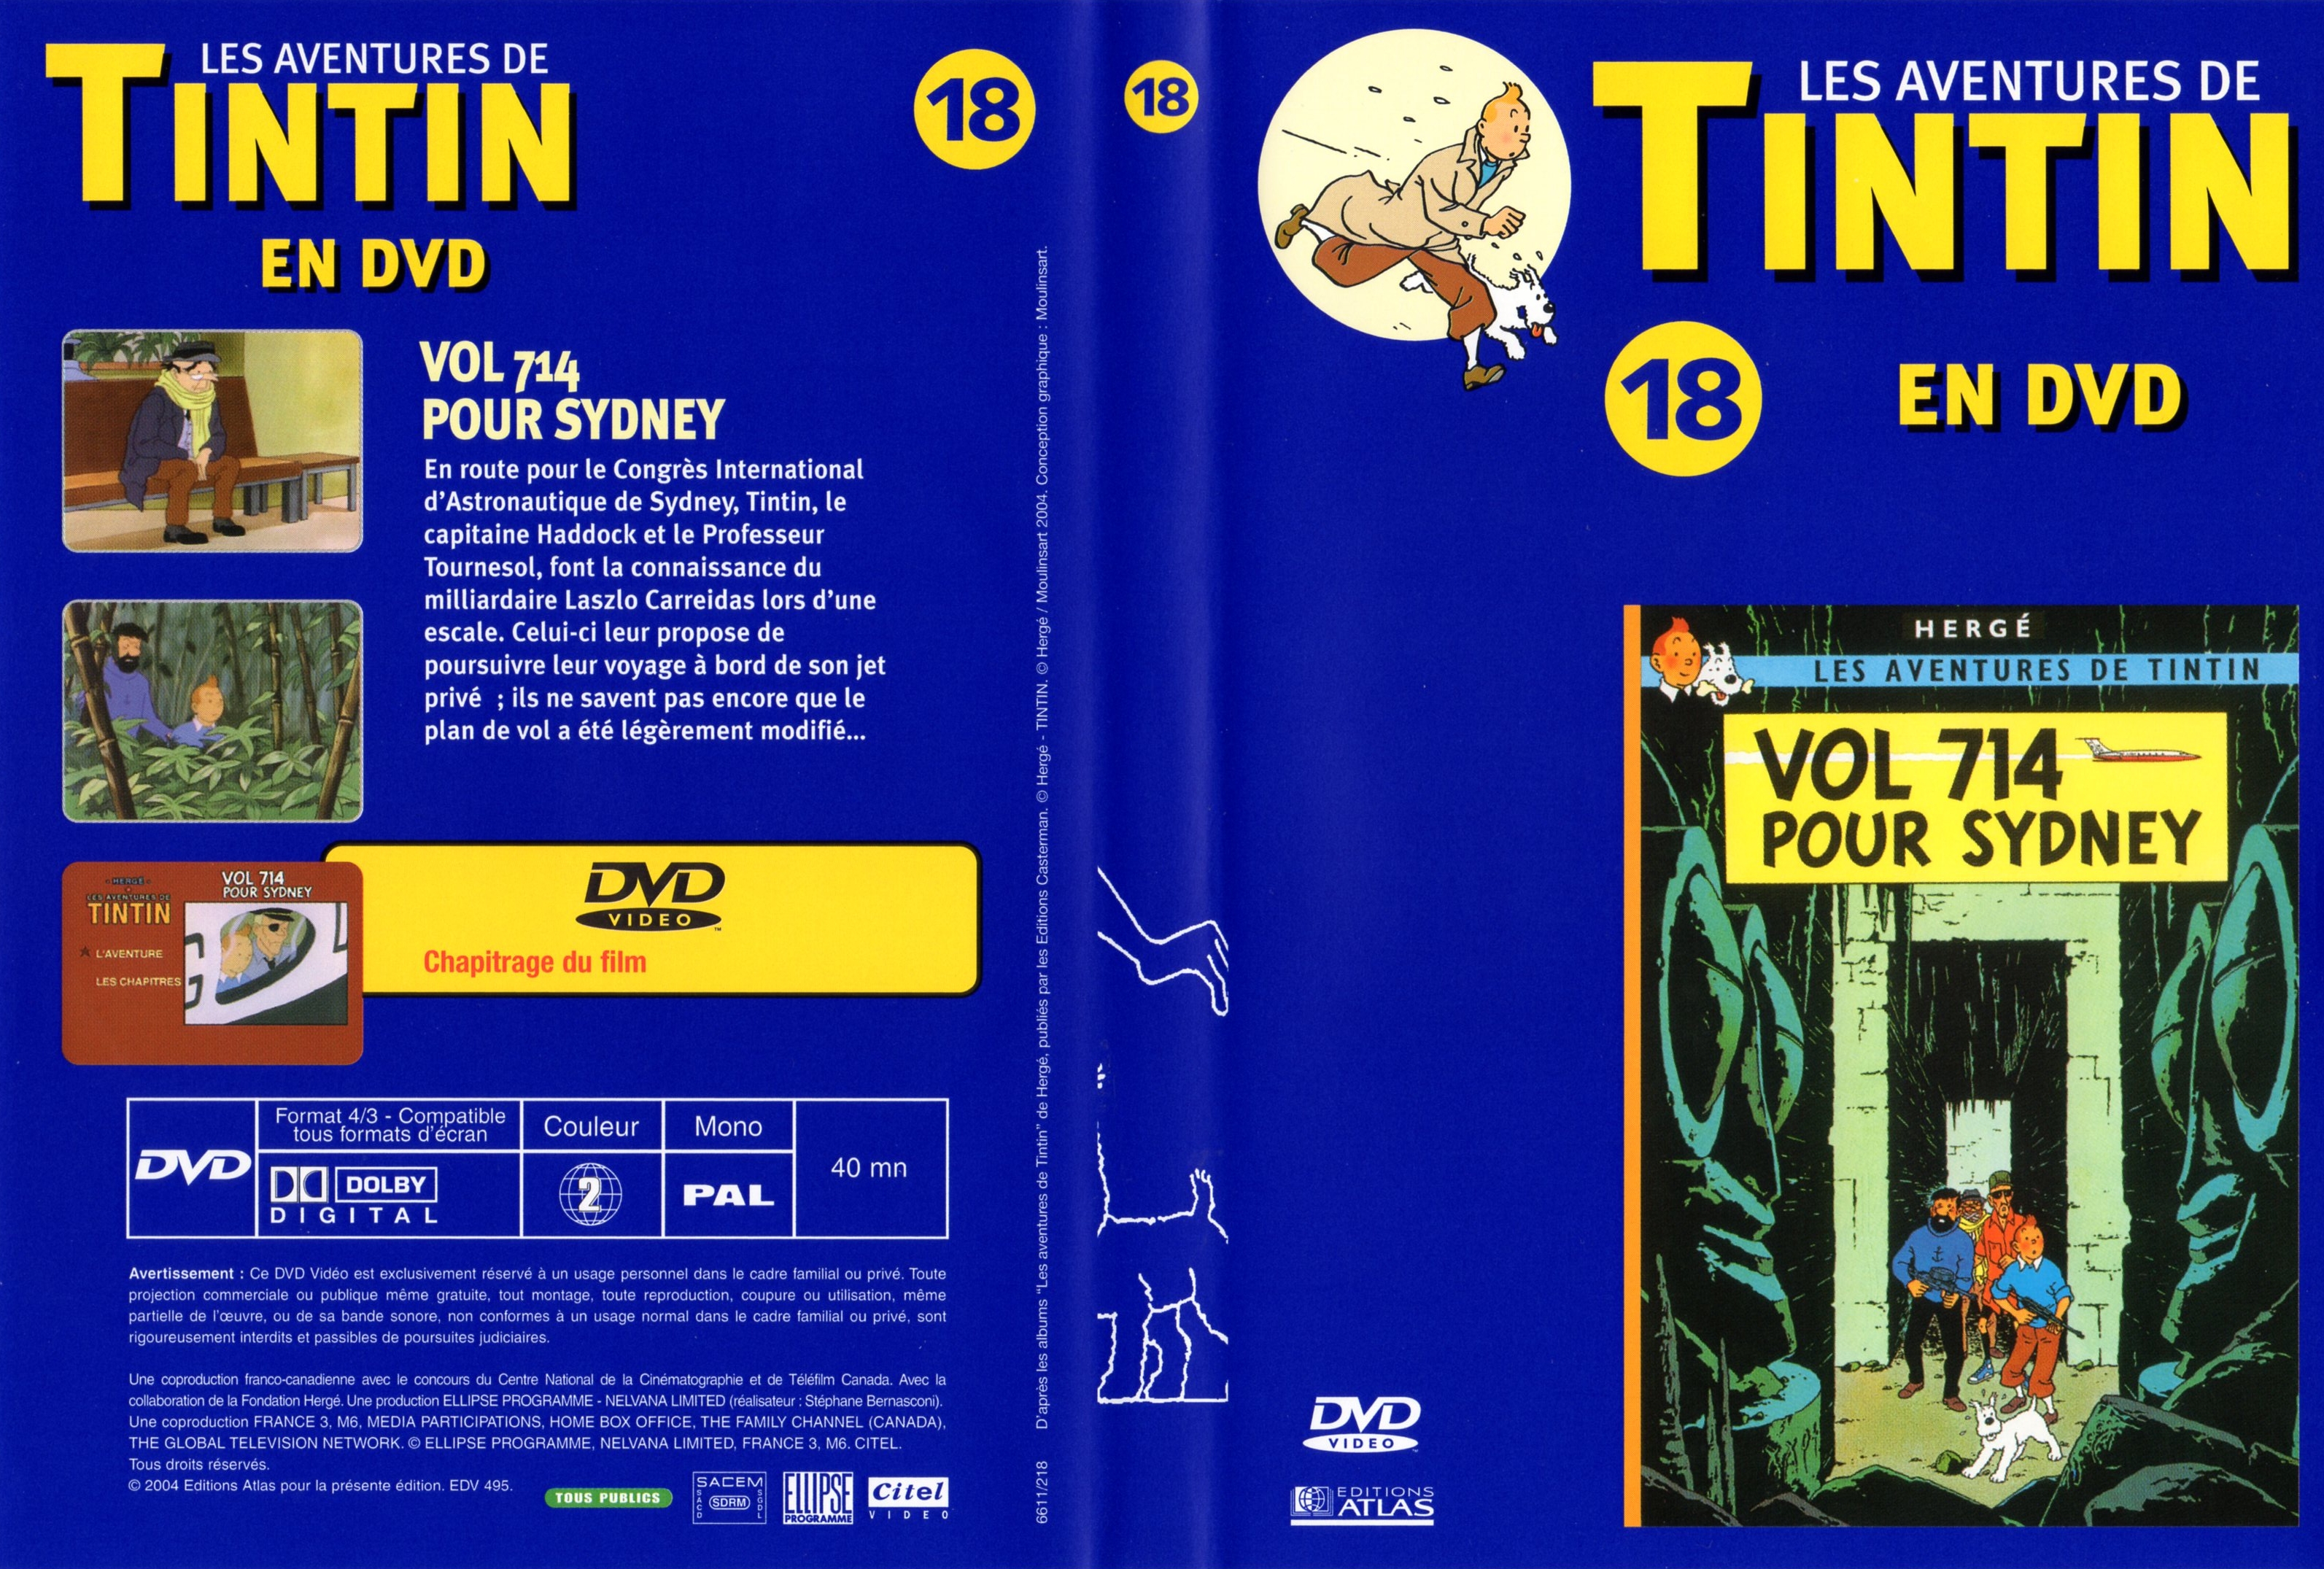 Jaquette DVD Tintin - vol 18 - Vol 714 pour sydney v2